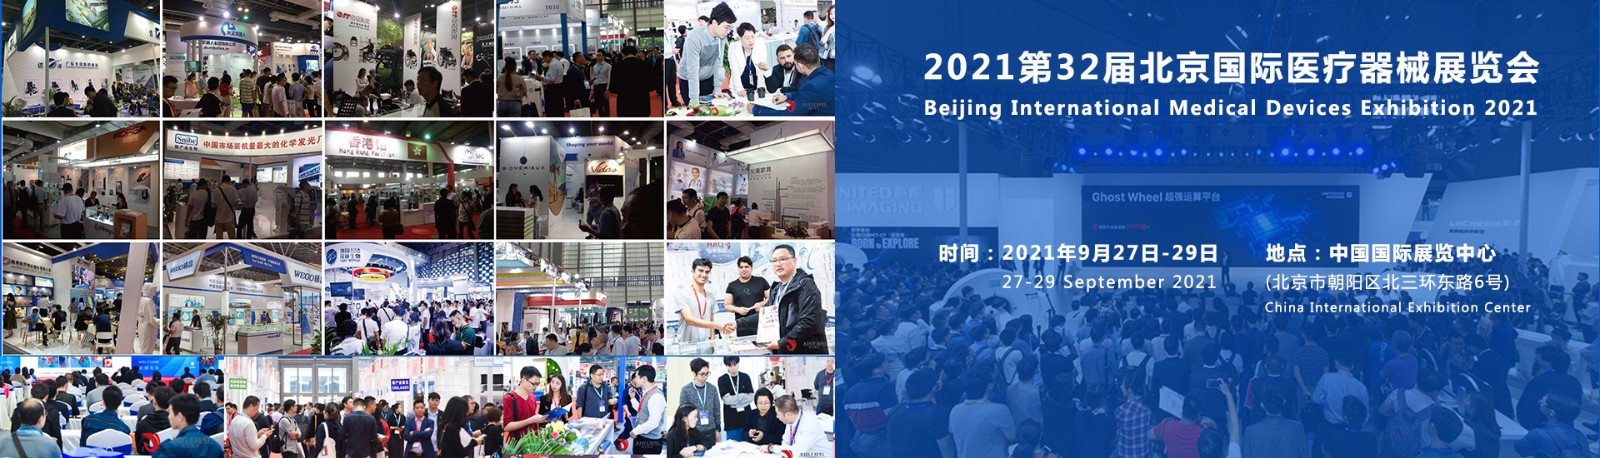 医疗器械展览会于9月27-29日在中国国际展览中心隆重举办